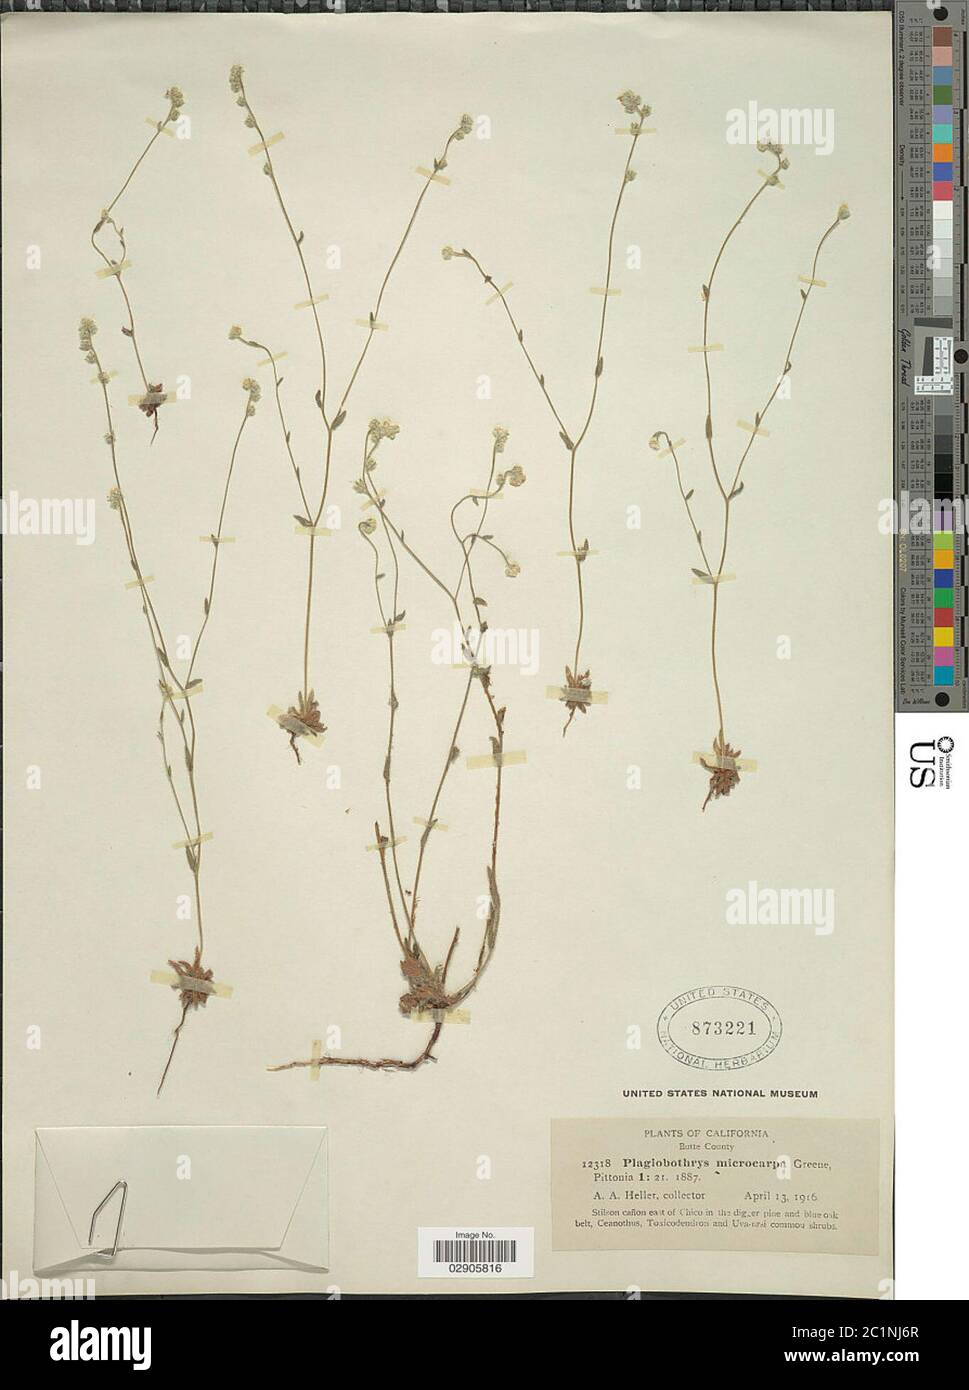 Plagiobothrys microcarpus Greene Plagiobothrys microcarpus Greene. Stock Photo